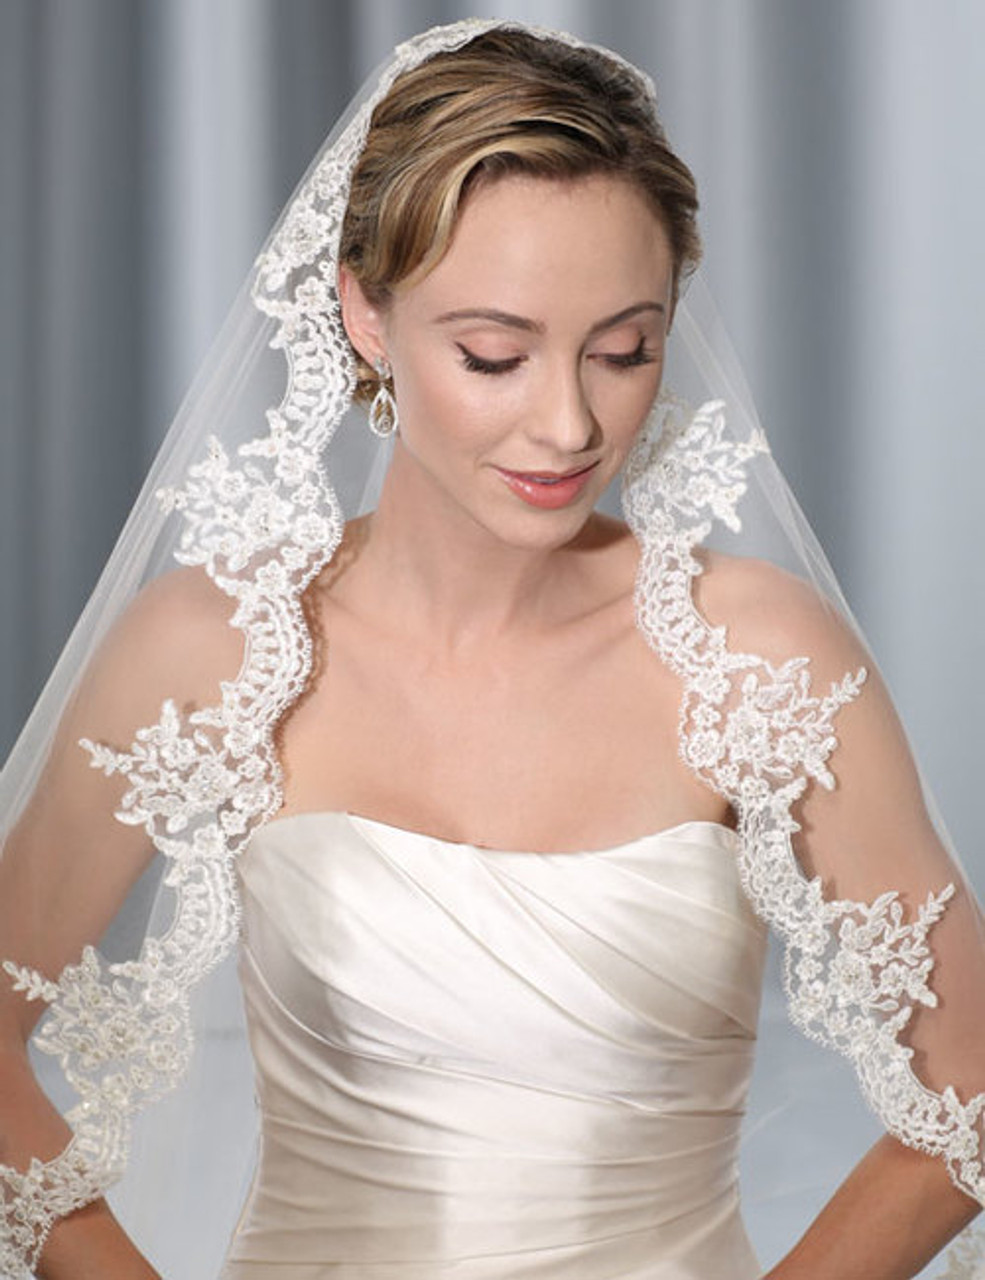 Bel Aire Bridal Wedding Veil V7175C - One Tier Cathedral Wedding Veil  Mantilla - Alencon Lace